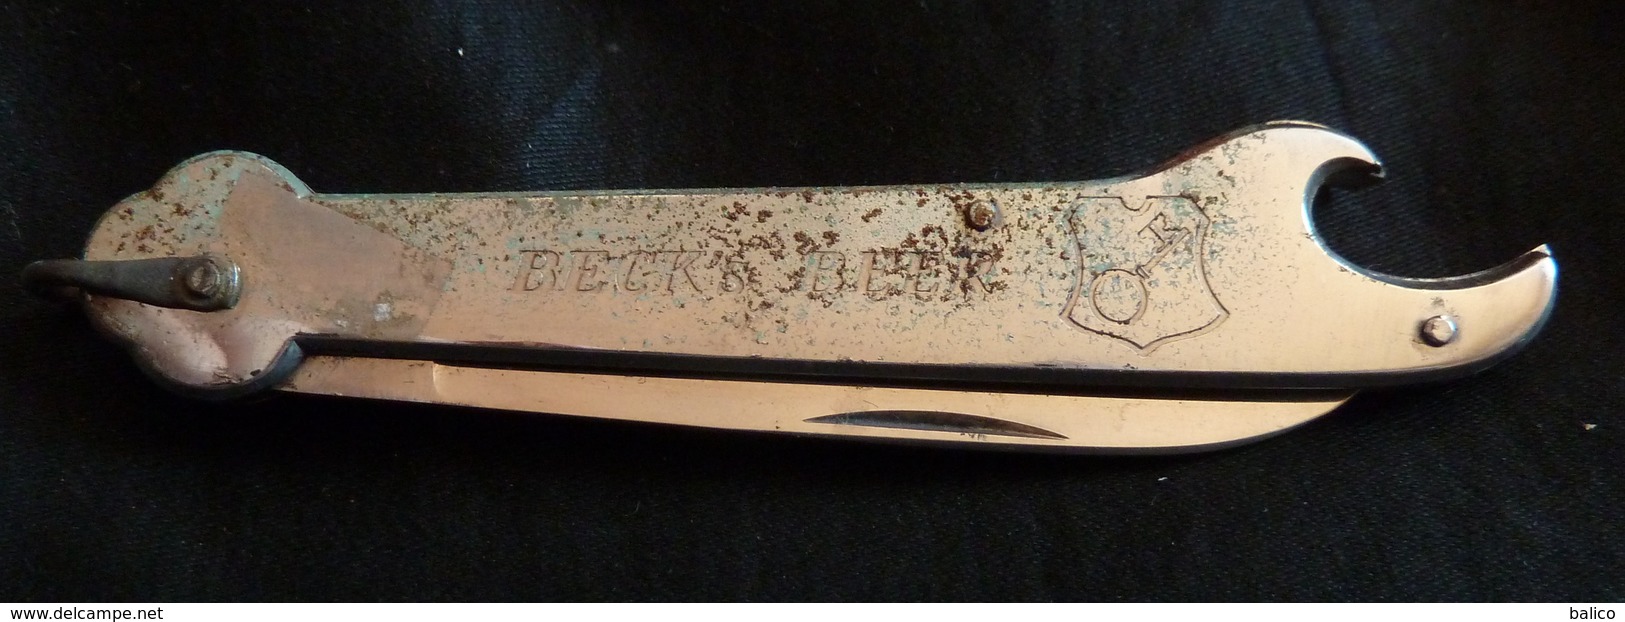 Couteau Avec Publicité, Beck's Béer Et Décapsuleur - Cuchillos